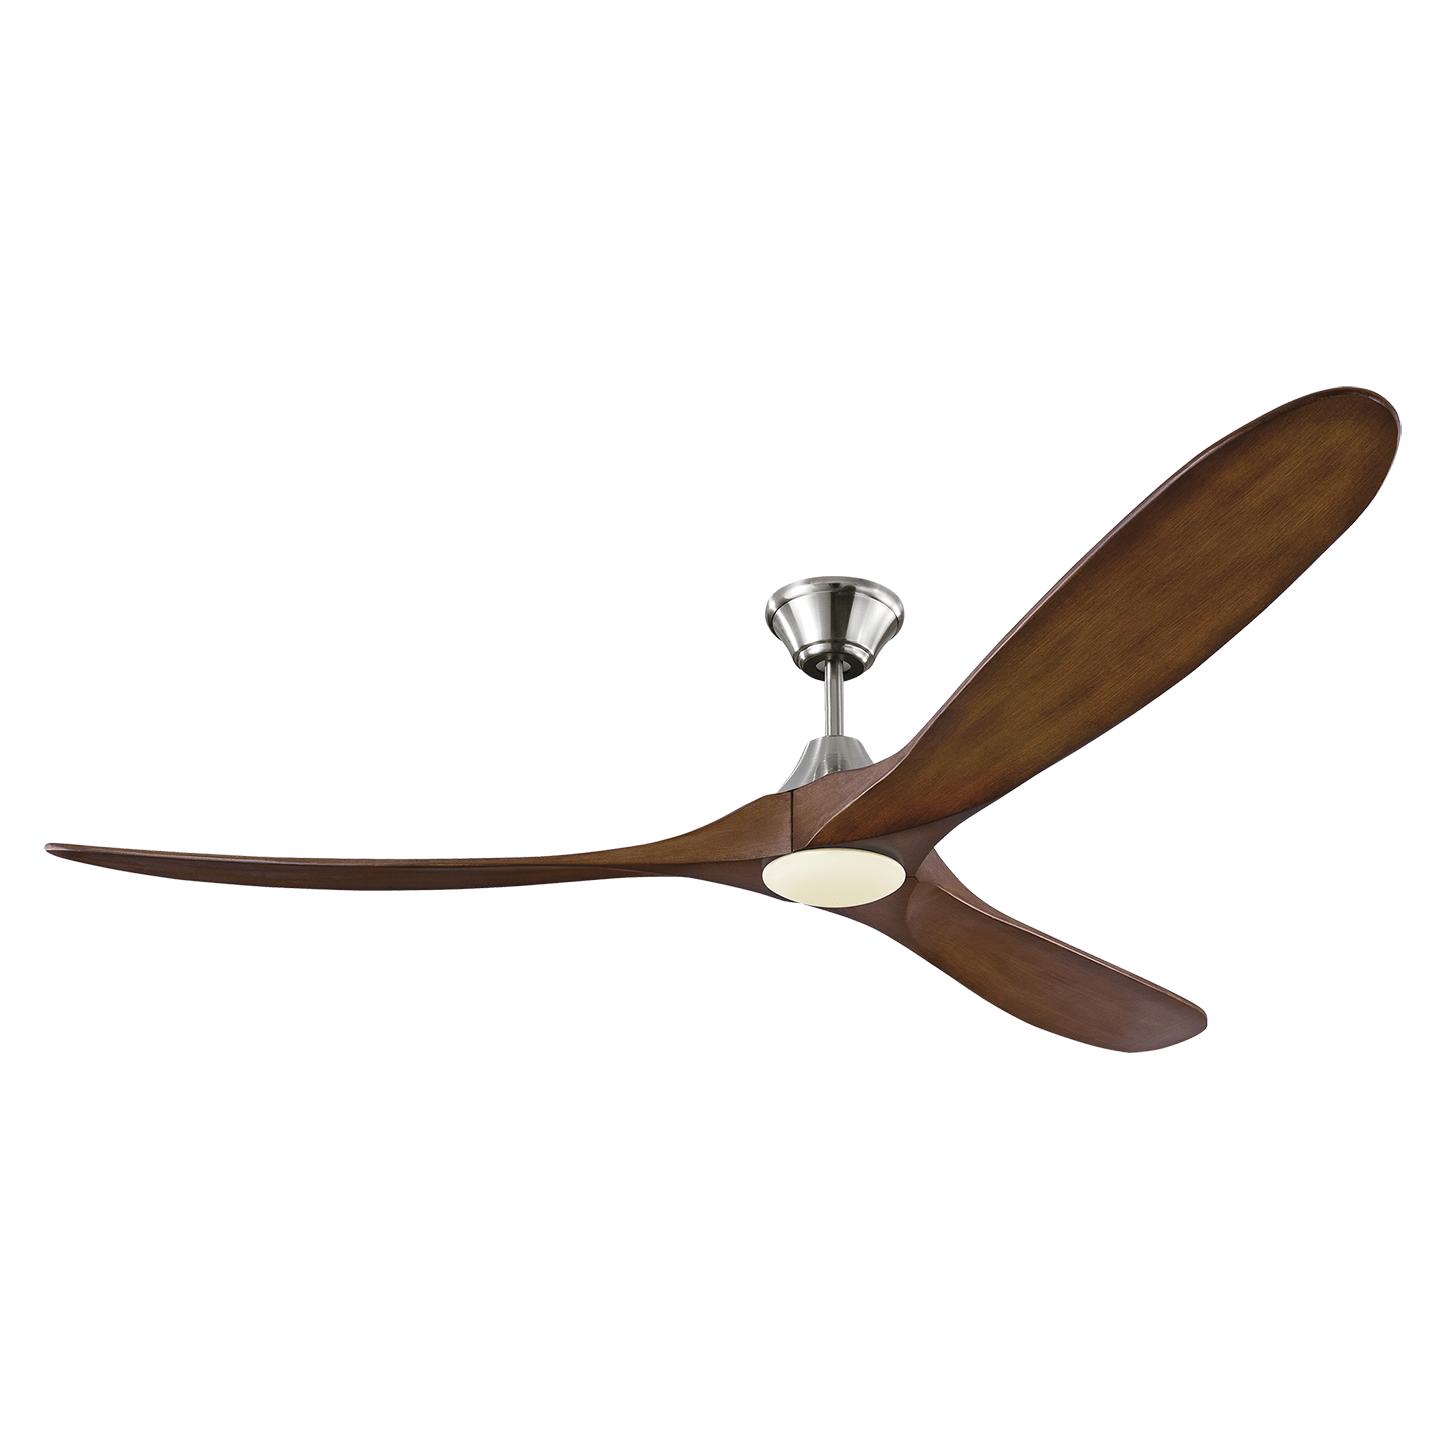 Купить Потолочный вентилятор Maverick 70" LED Ceiling Fan в интернет-магазине roooms.ru